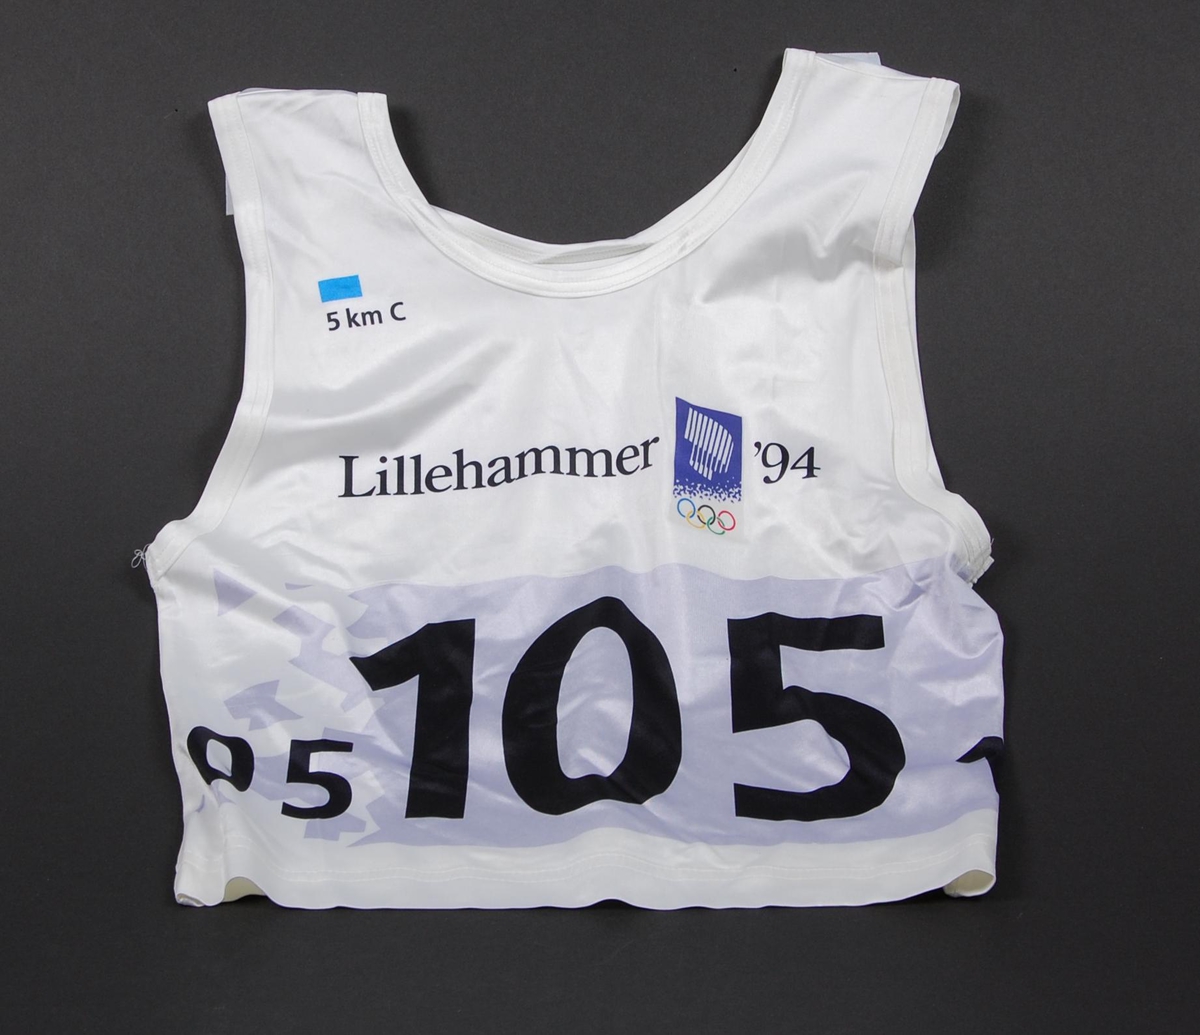 Startnummer med logoer for de olympiske vinterleker på Lillehammer i 1994 og krystallmønster. Krystallmønsteret inngikk i LOOCs designprogram. 